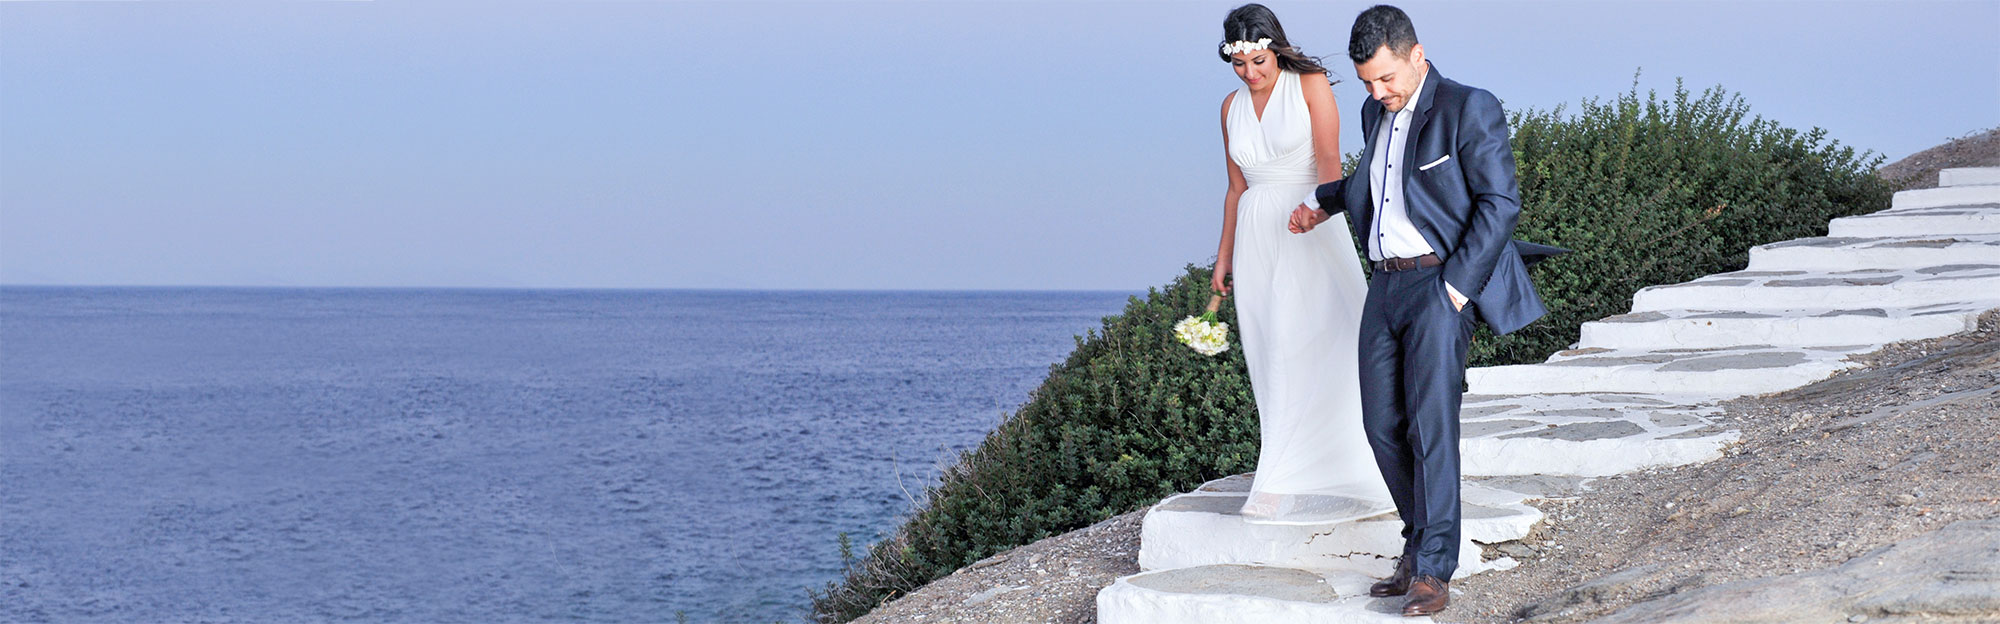 Wedding at Chrissopigi in Sifnos